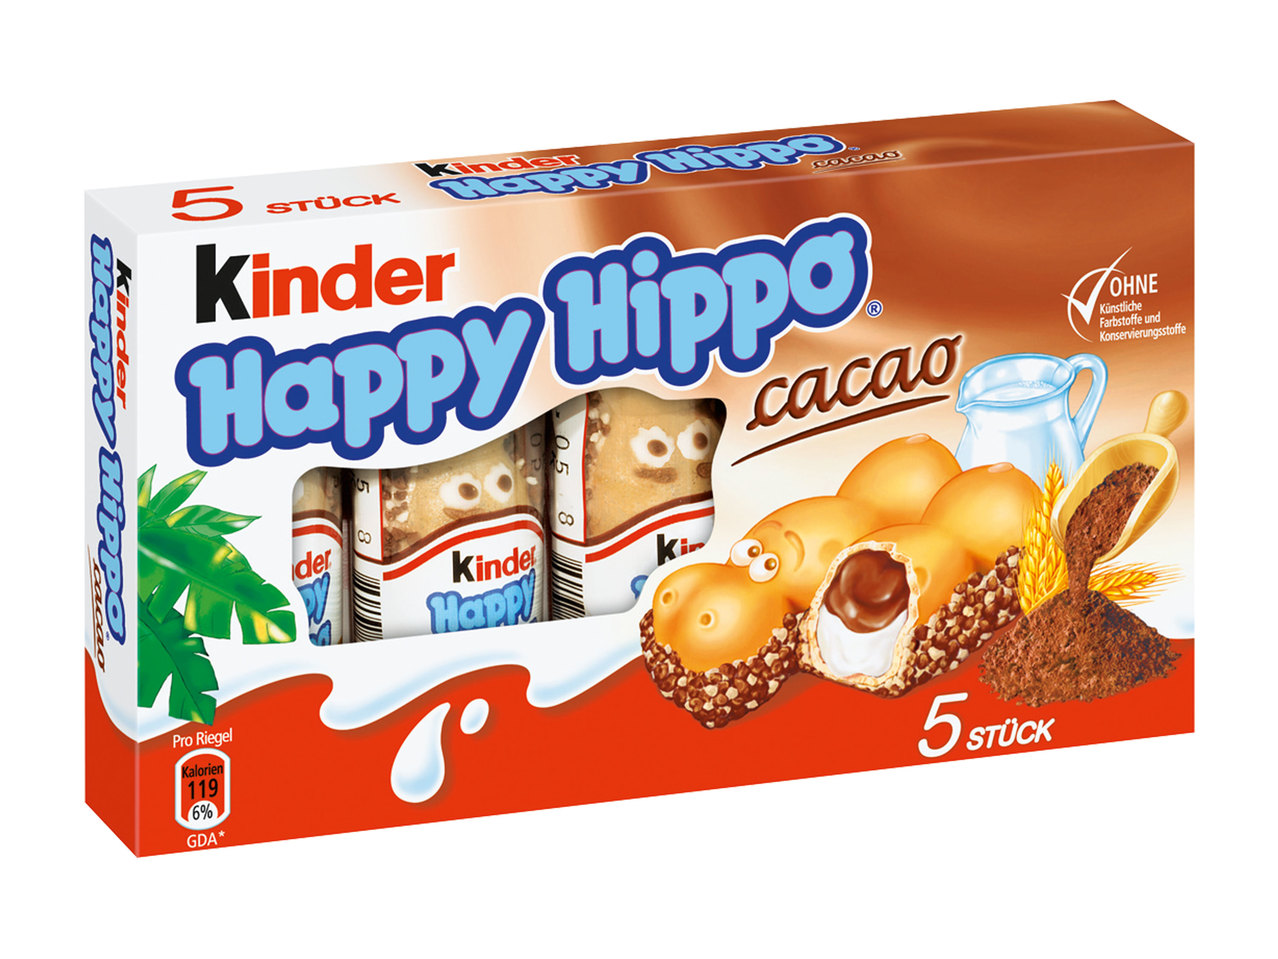 KINDER Happy Hippo Cacao